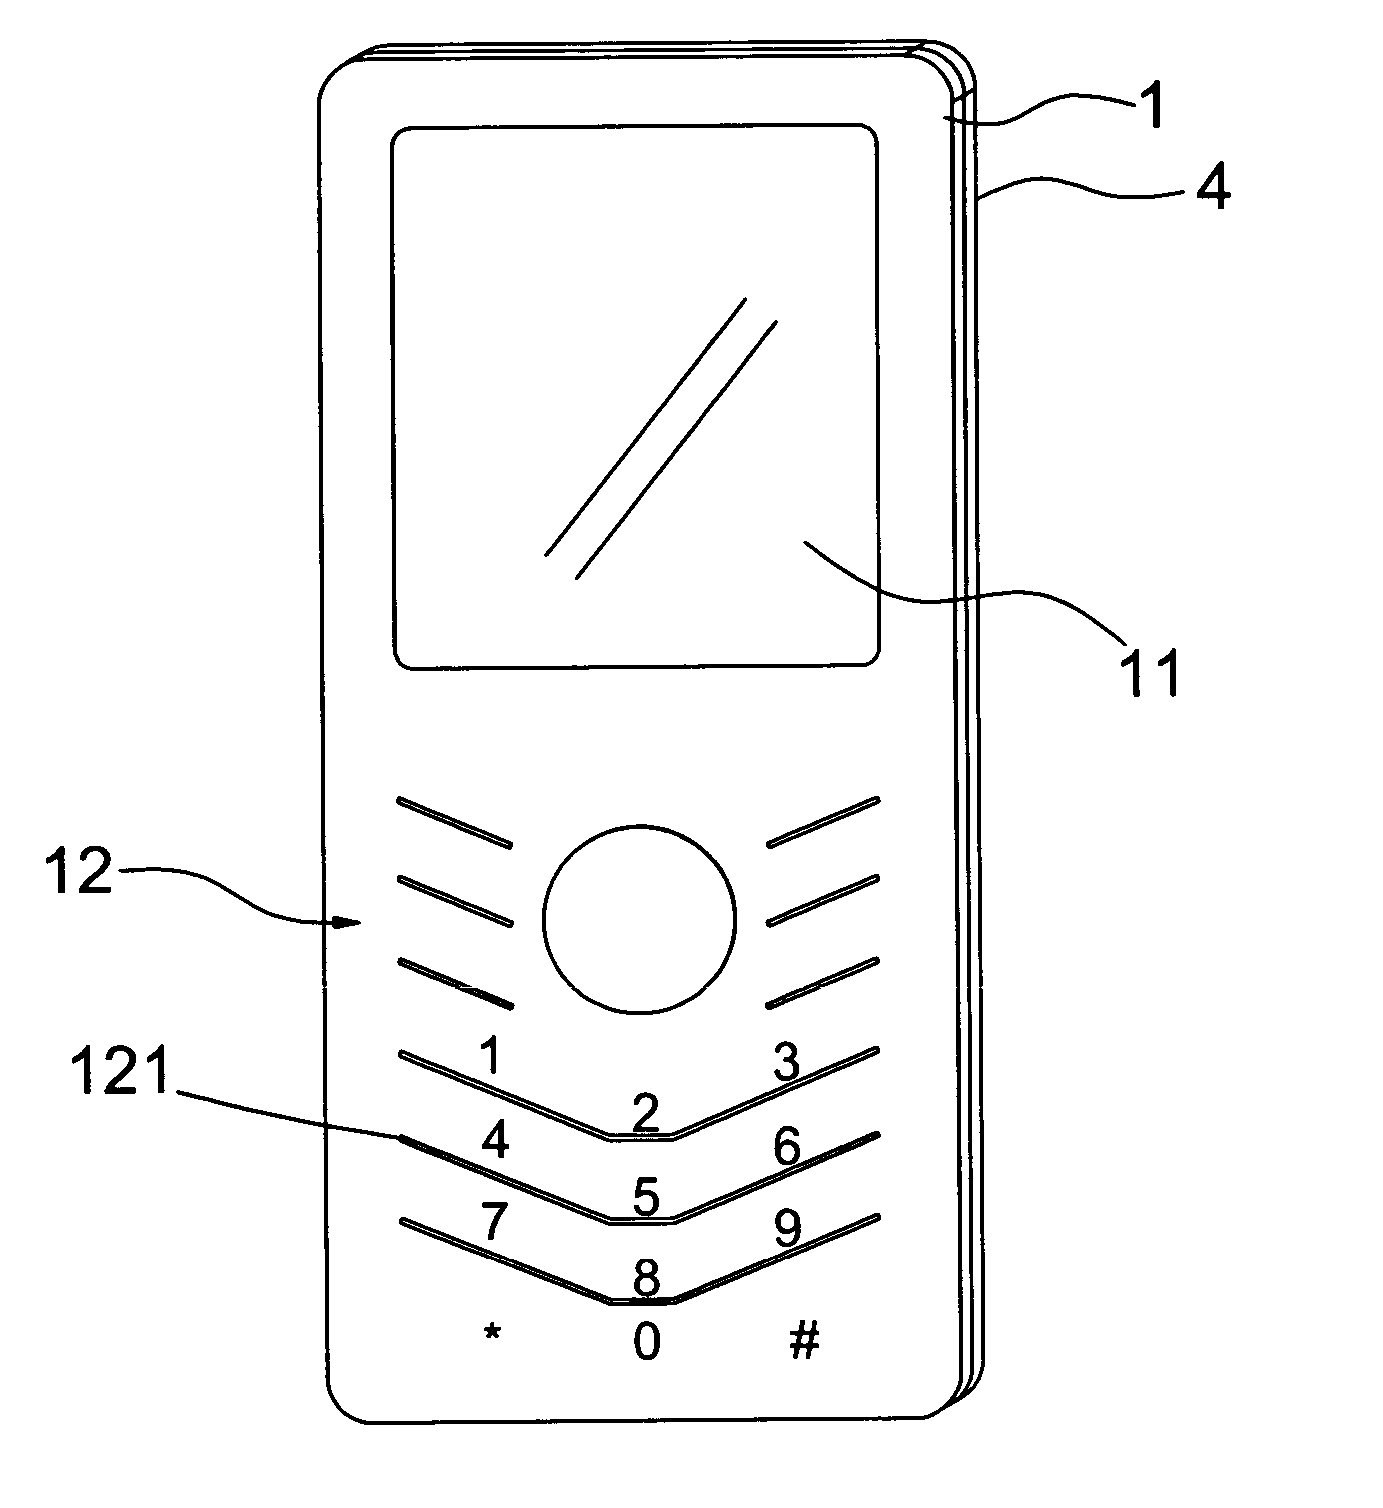 Faceplate having keys for mobile phone